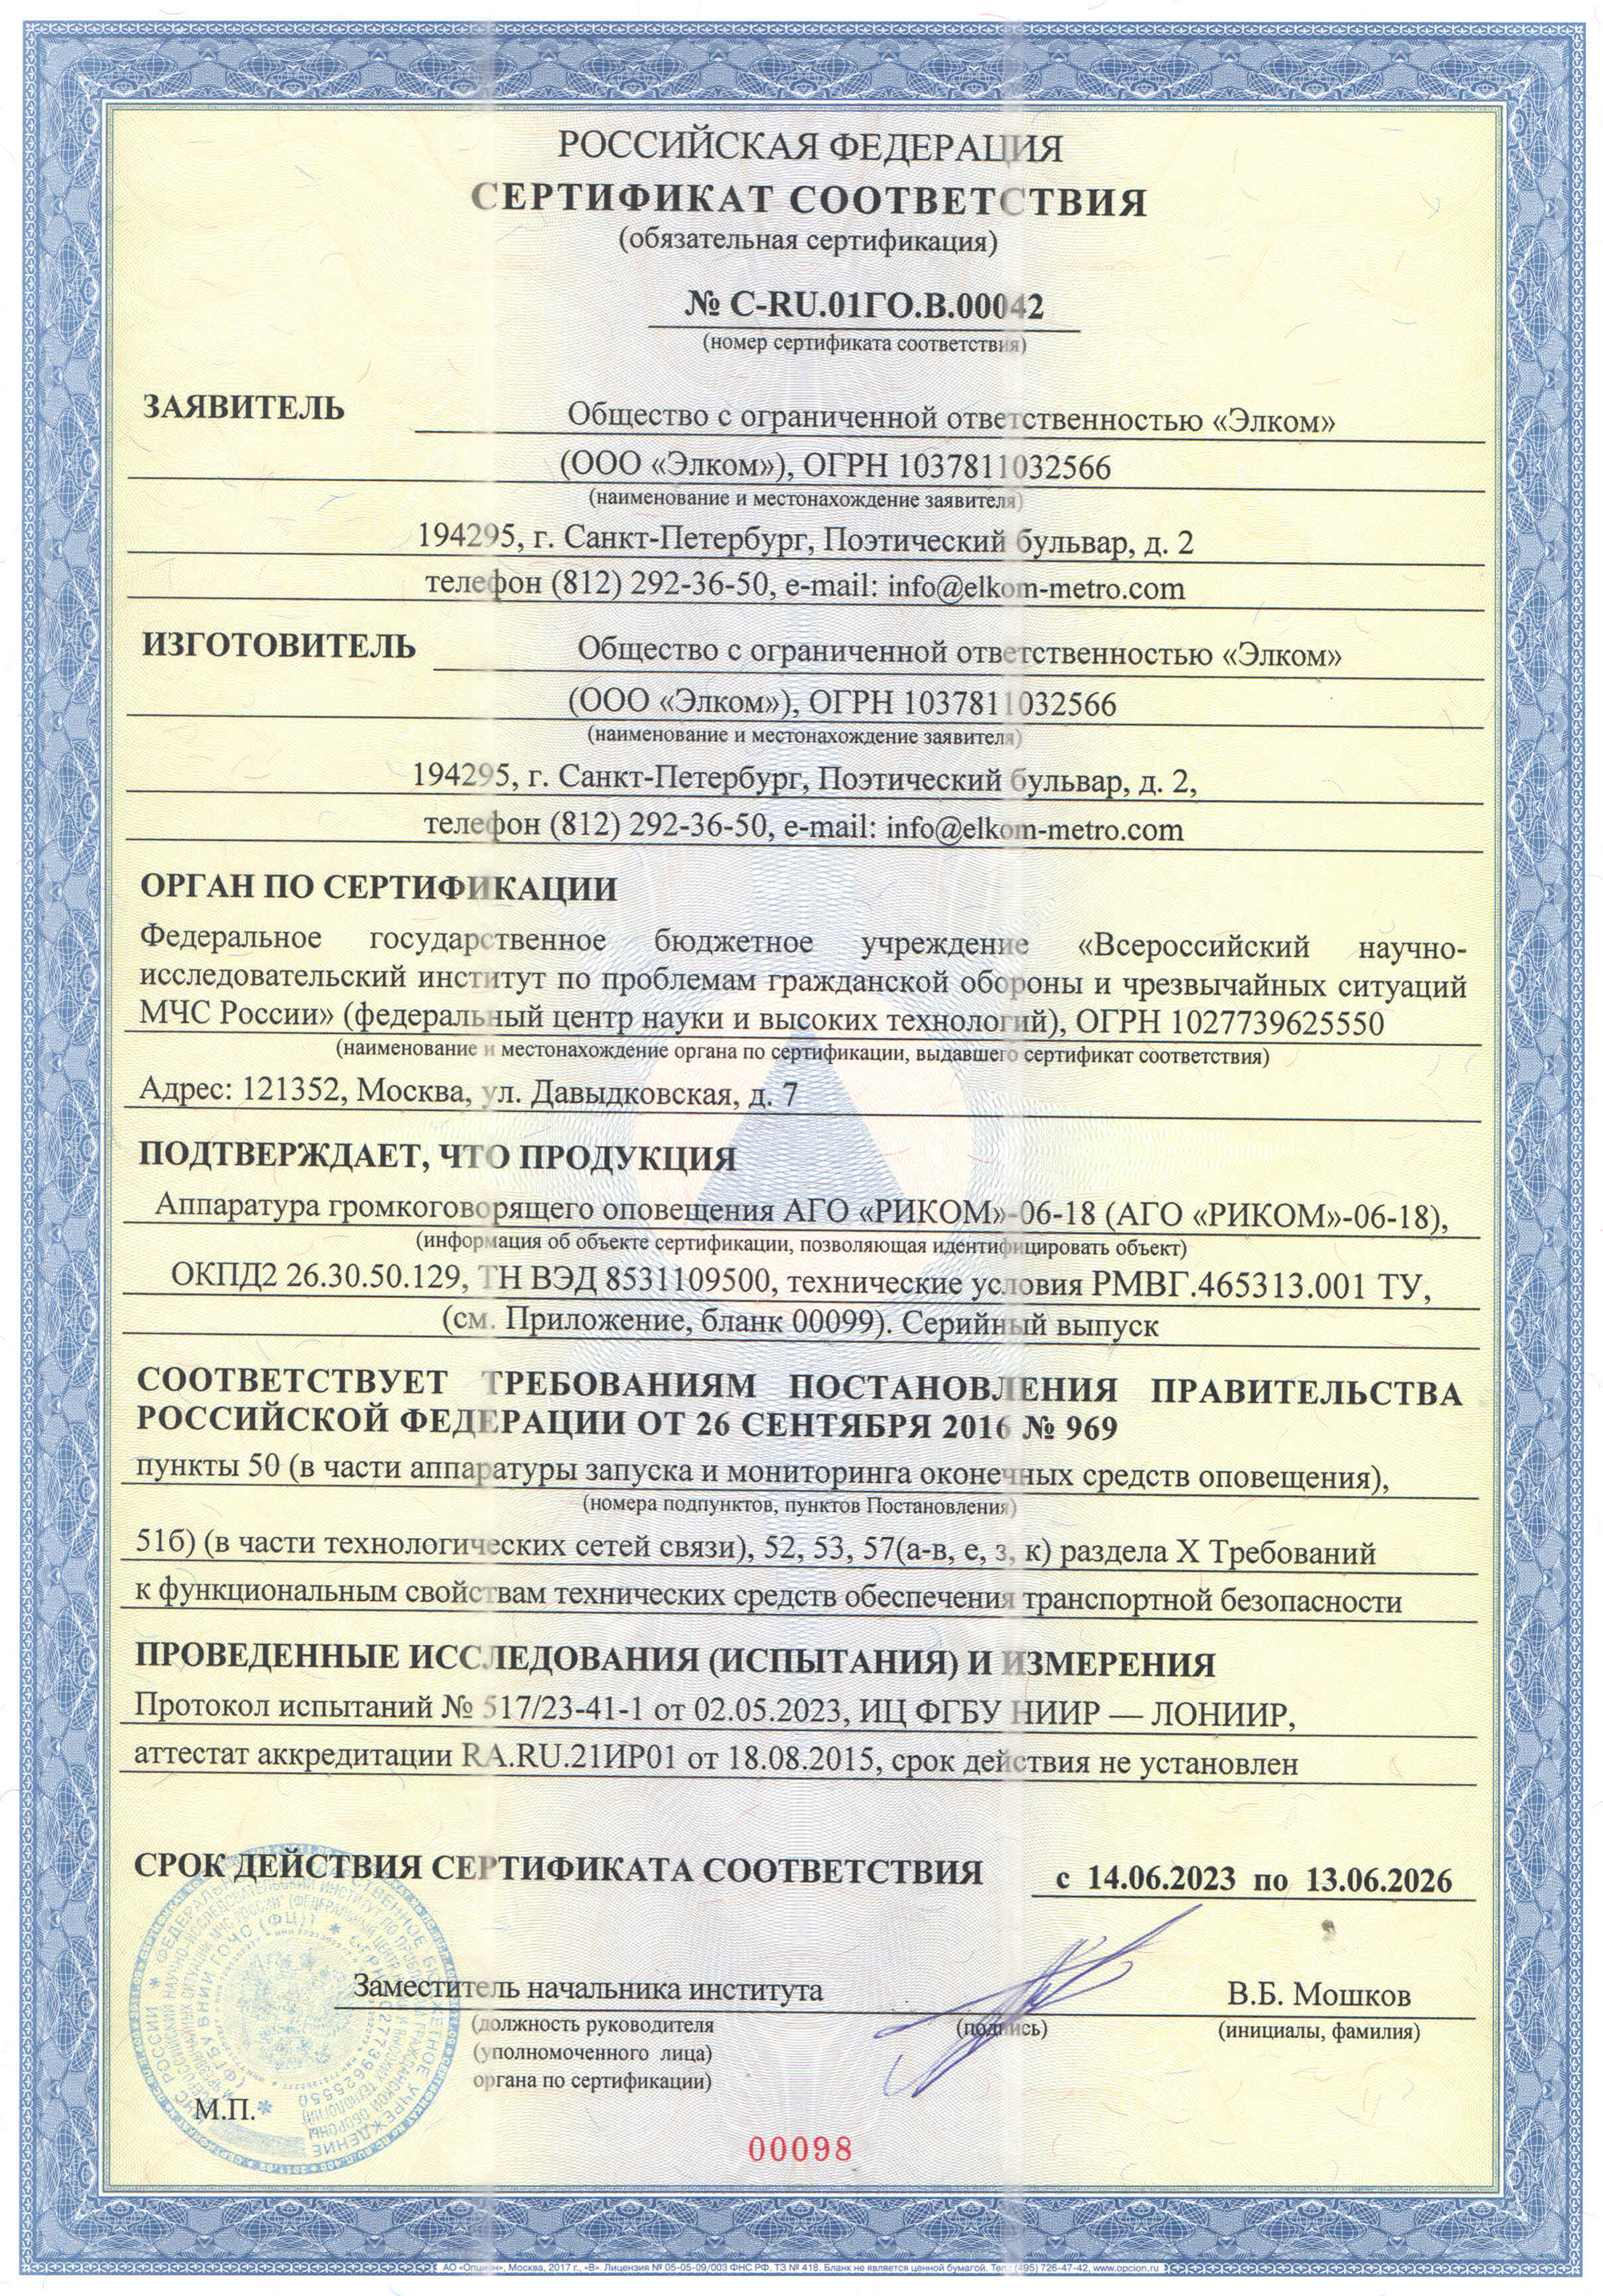 Сертификат по транспортной безопасности АГО «РИКОМ»-06-18